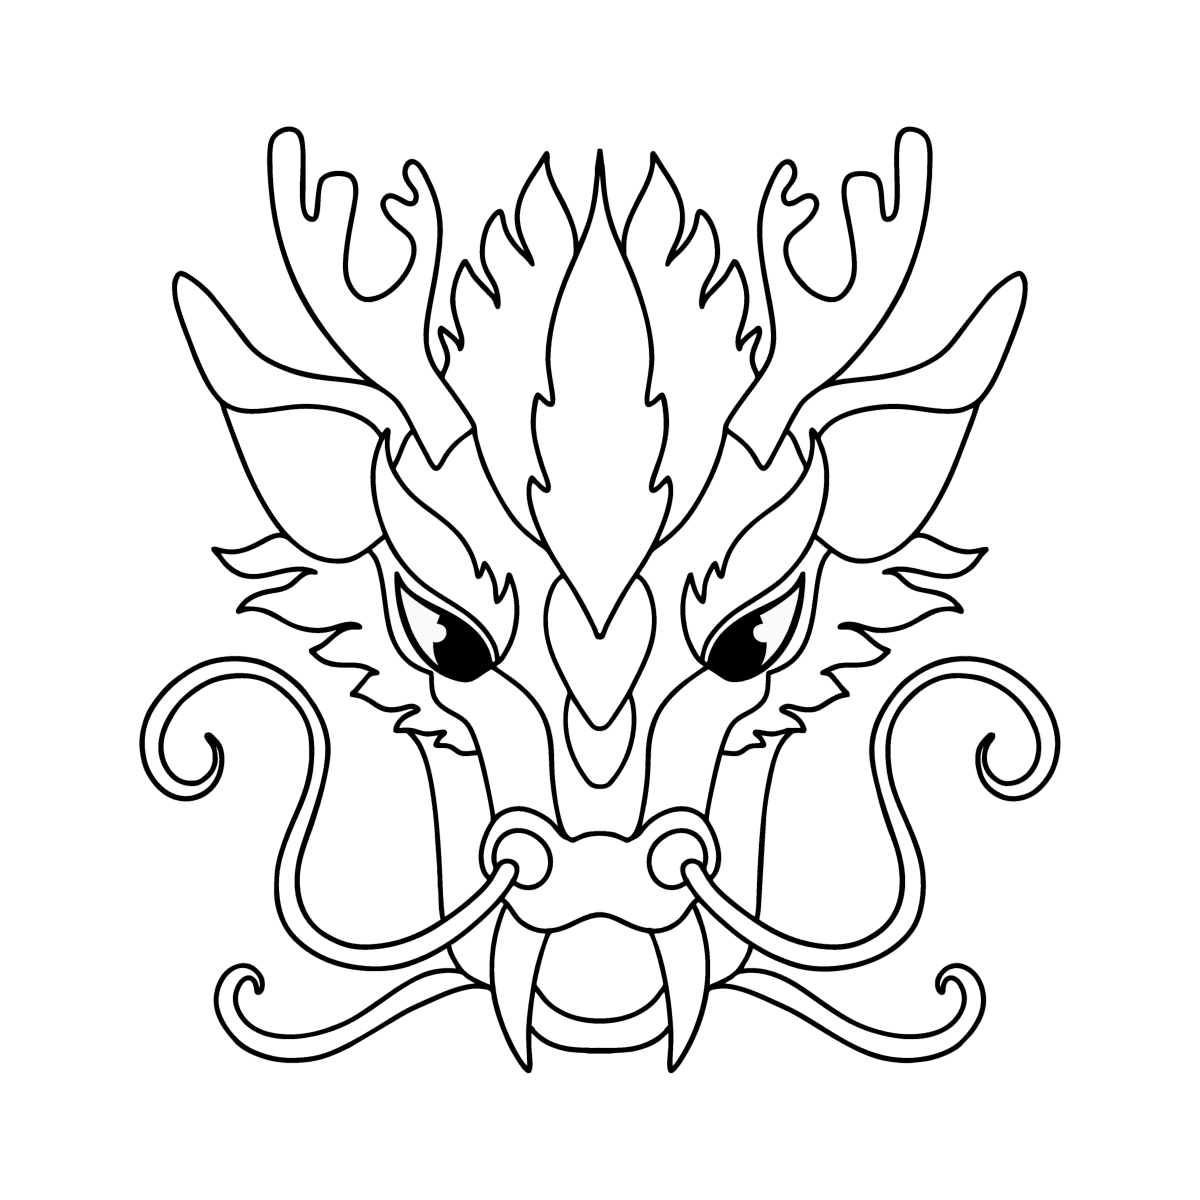 Голова дракона раскраска